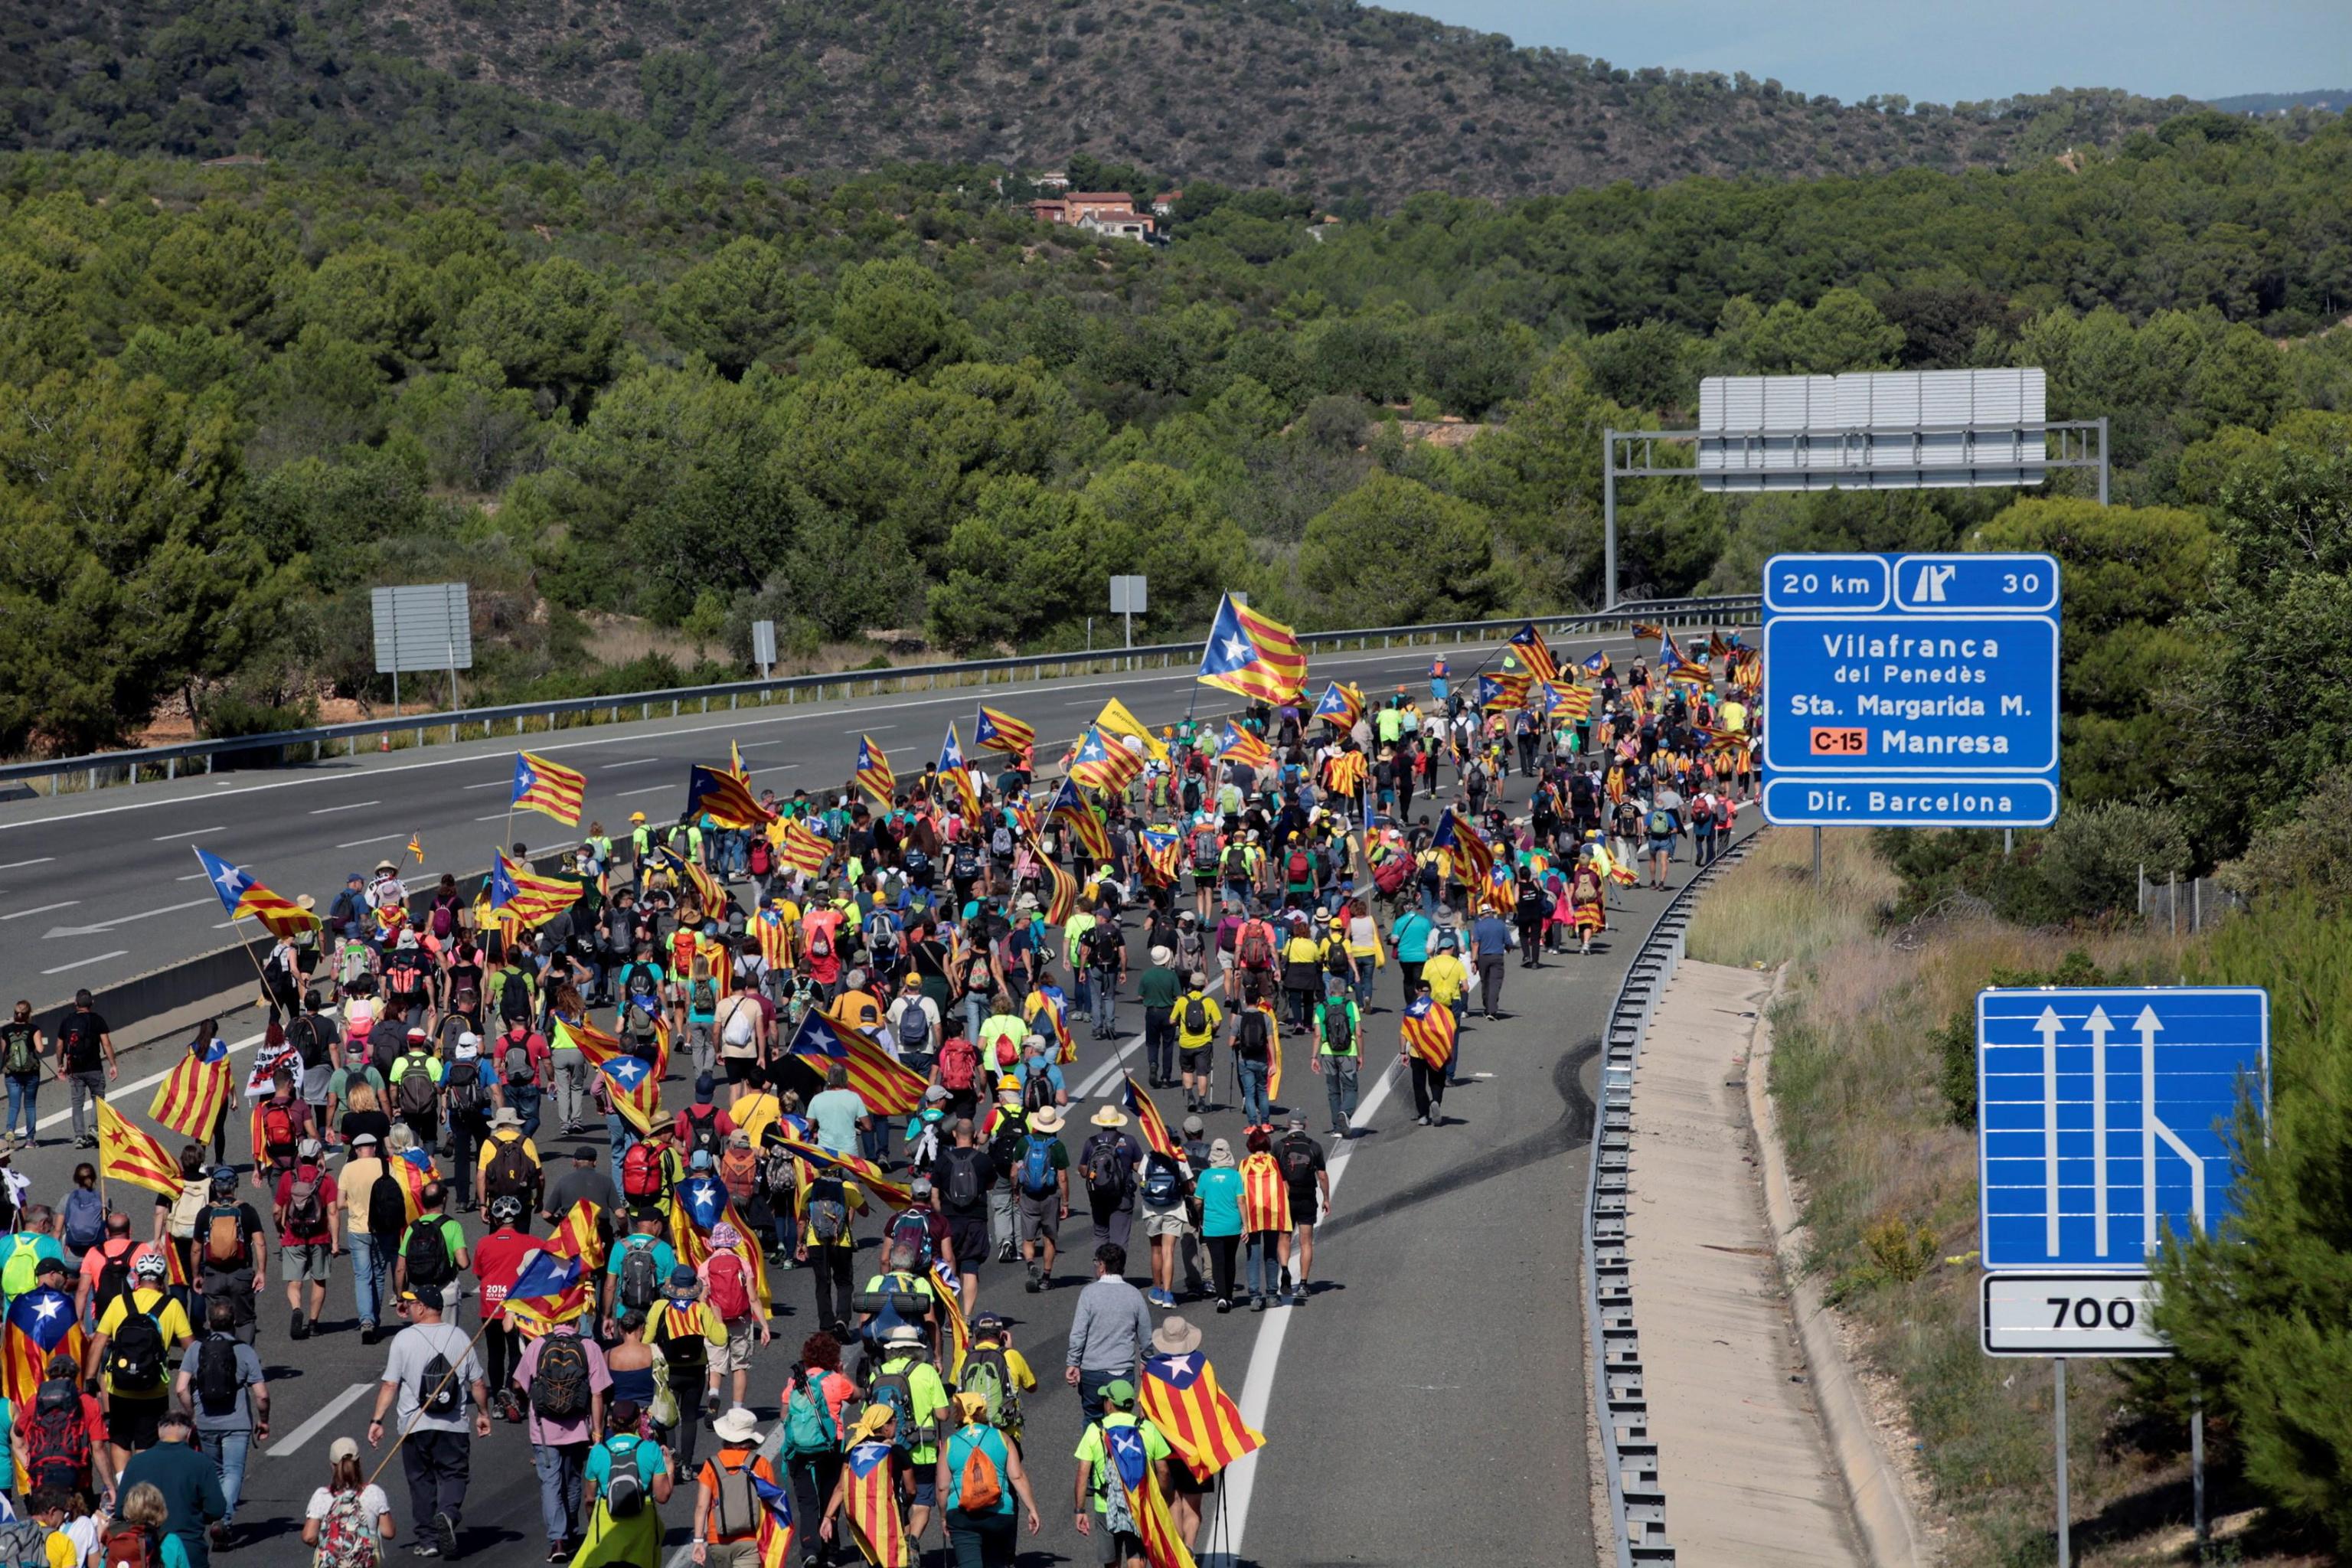 La protesta era iniziata nel pomeriggio, con un lungo corteo di marcia verso Barcellona